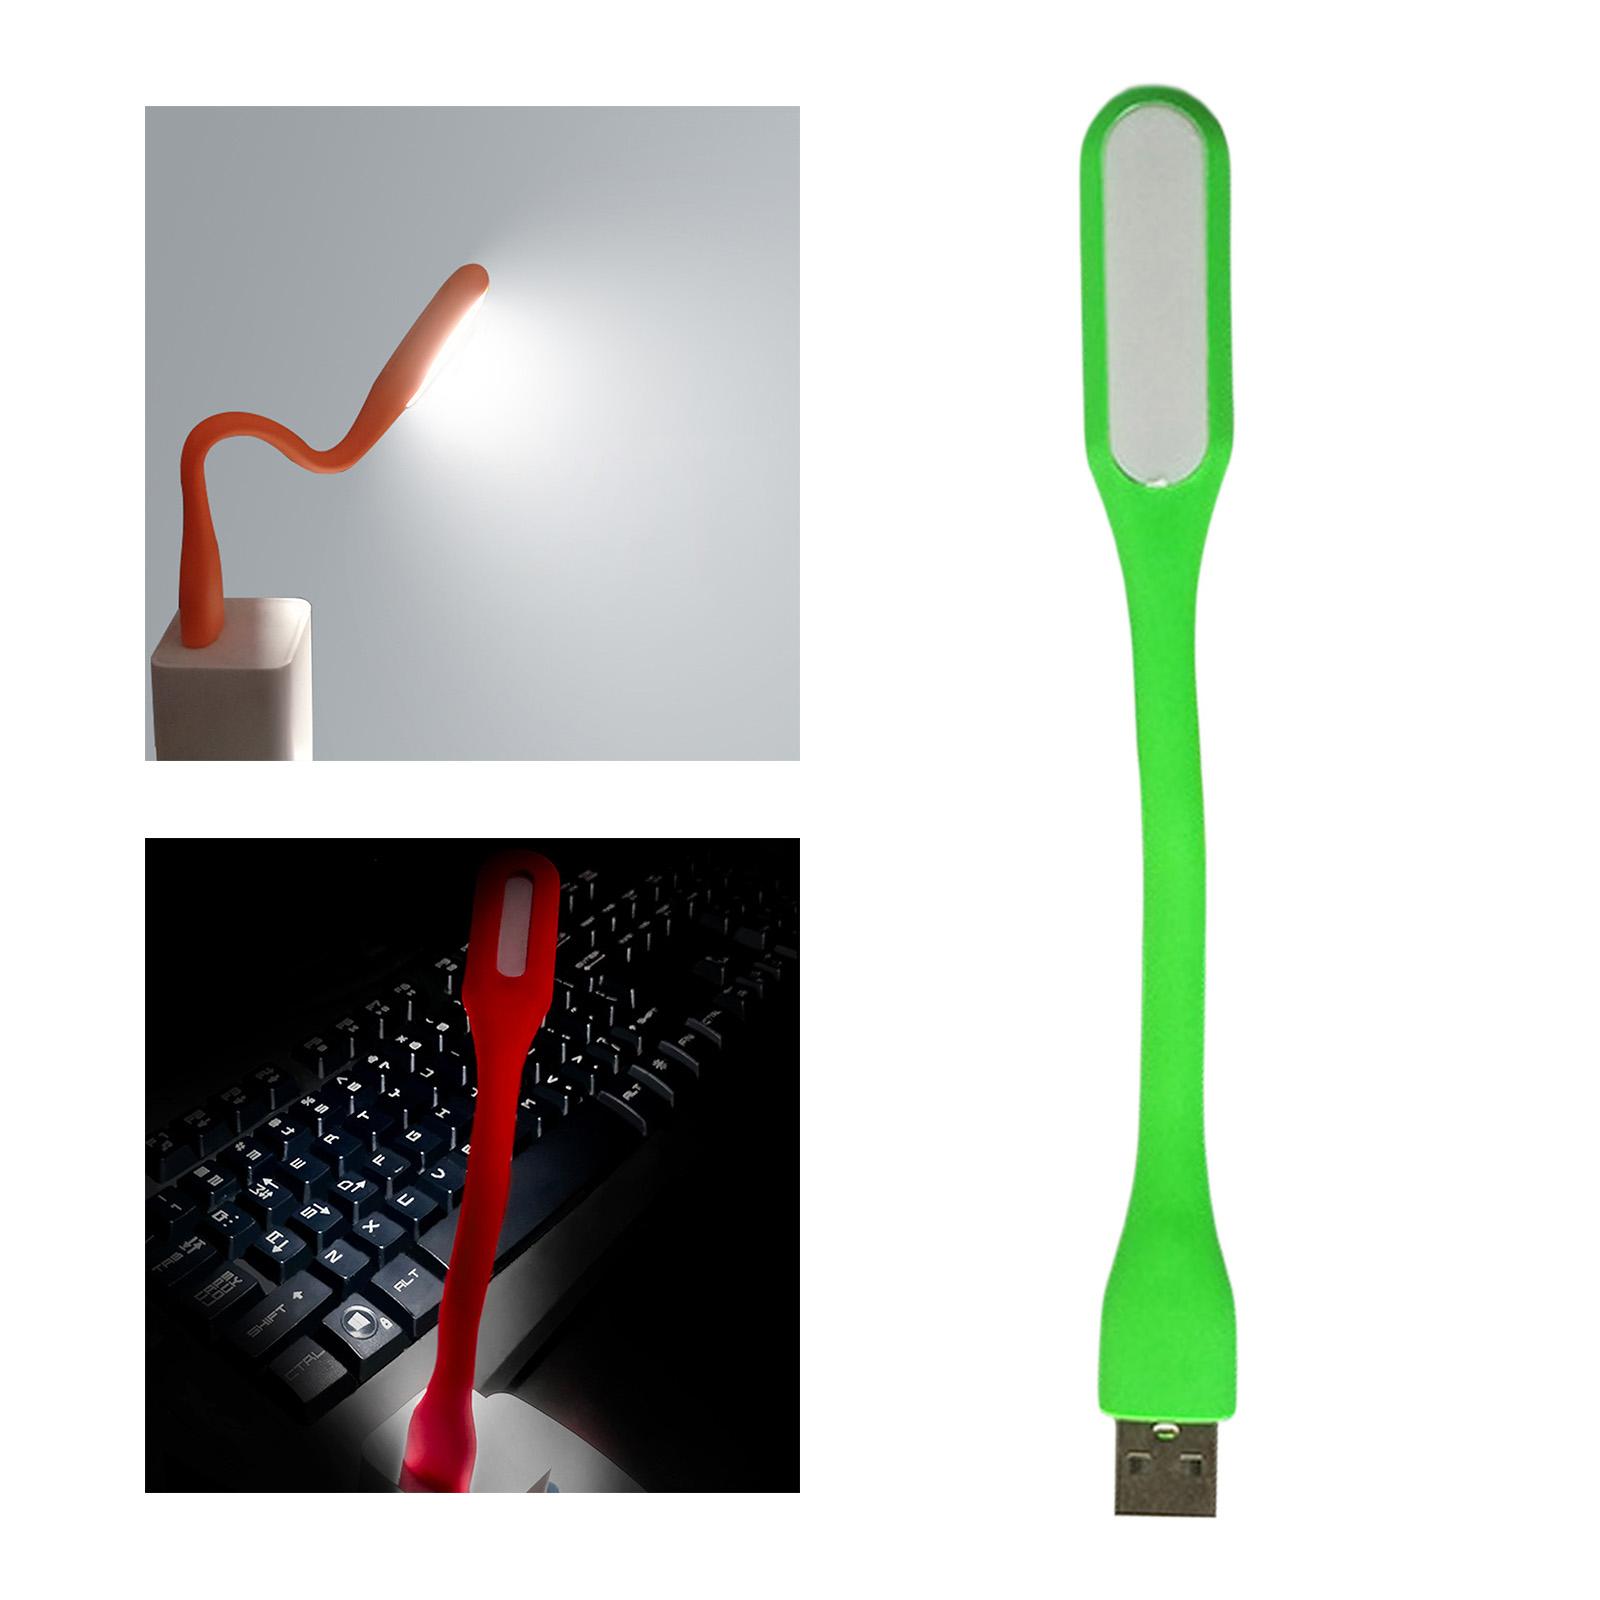 Flexible LED Light Lamp Portable Adjustable for Laptop Eye Care green